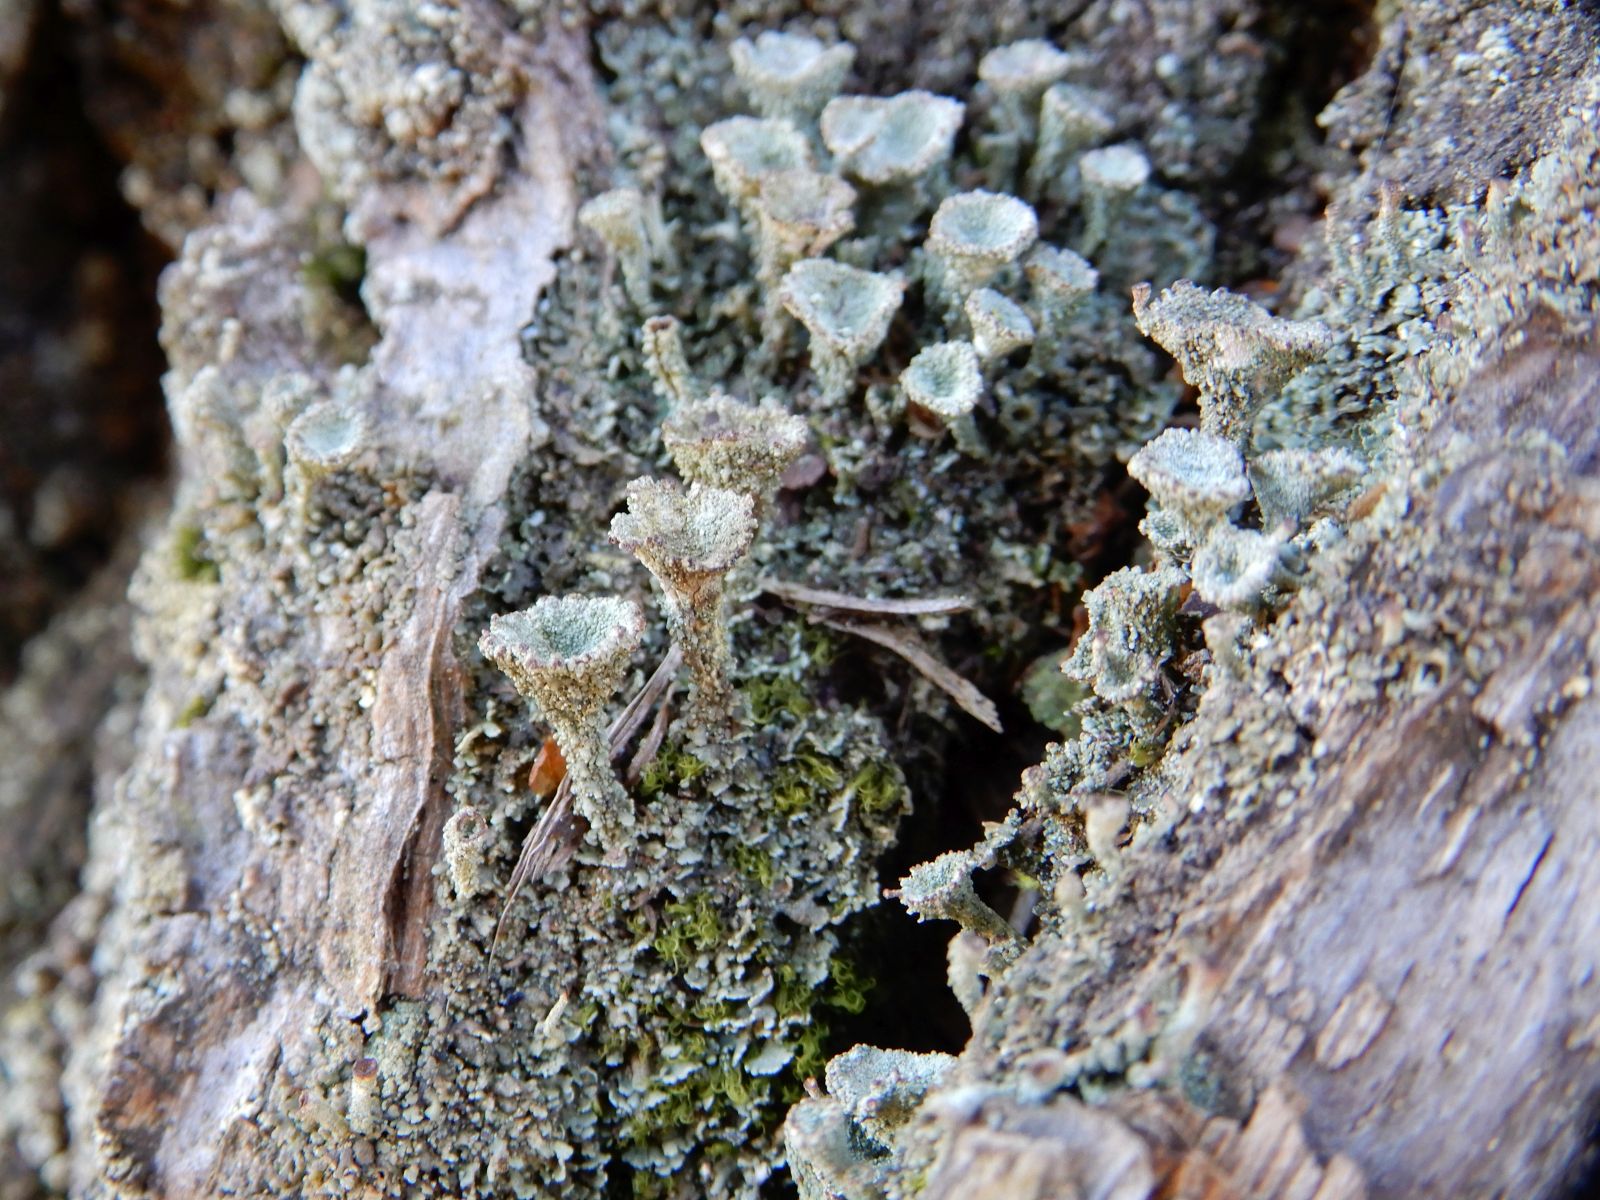 Ess-Kastanie im Forstgarten mit Trichterflechte (Cladonia)